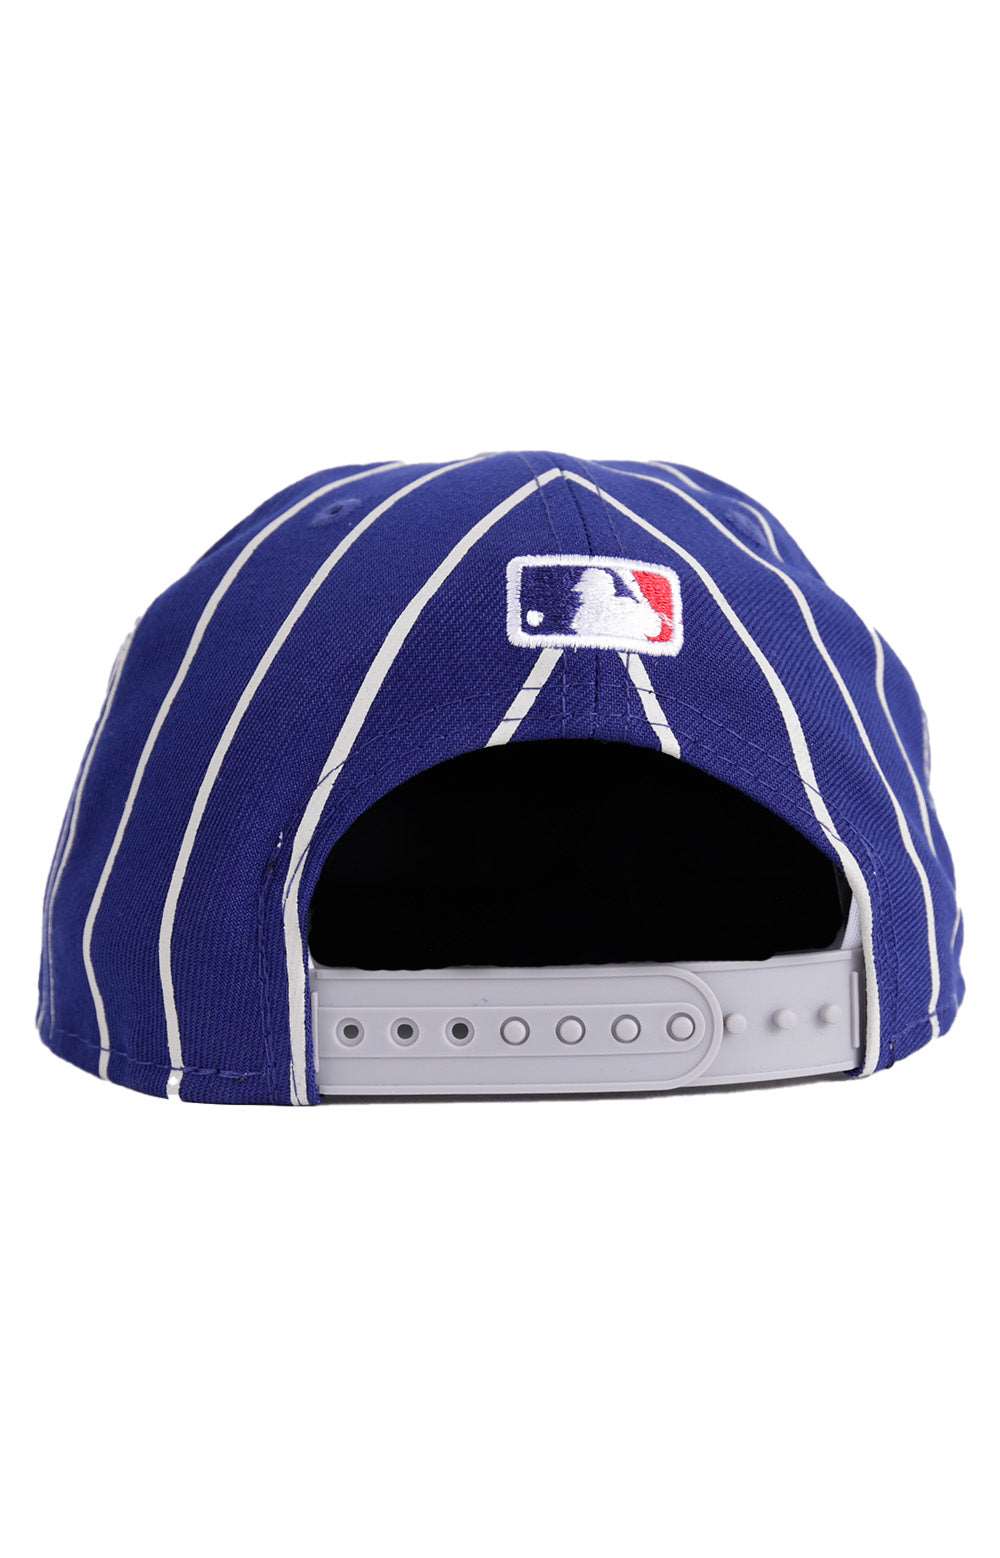 LA Dodgers City Arch 950 Snap-Back Hat